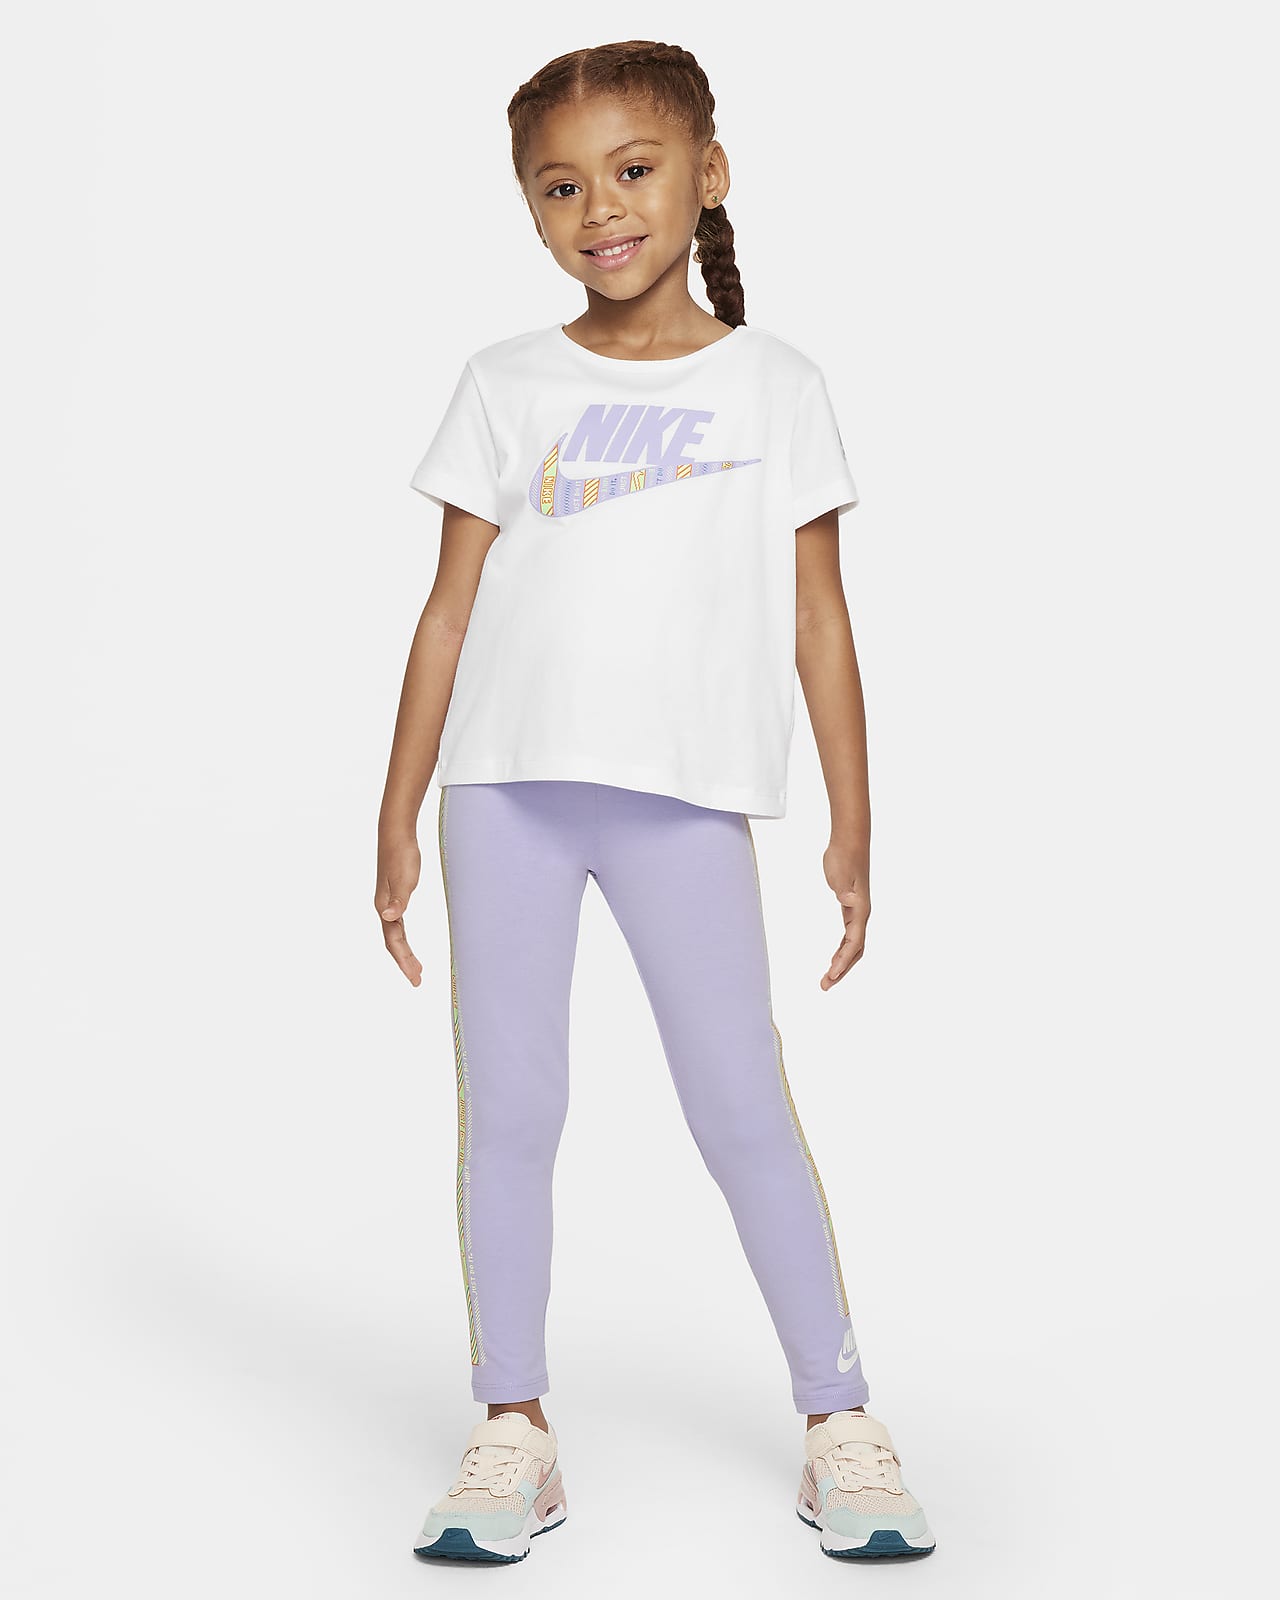 Nike Happy Camper Conjunto de leggings - Niño/a pequeño/a